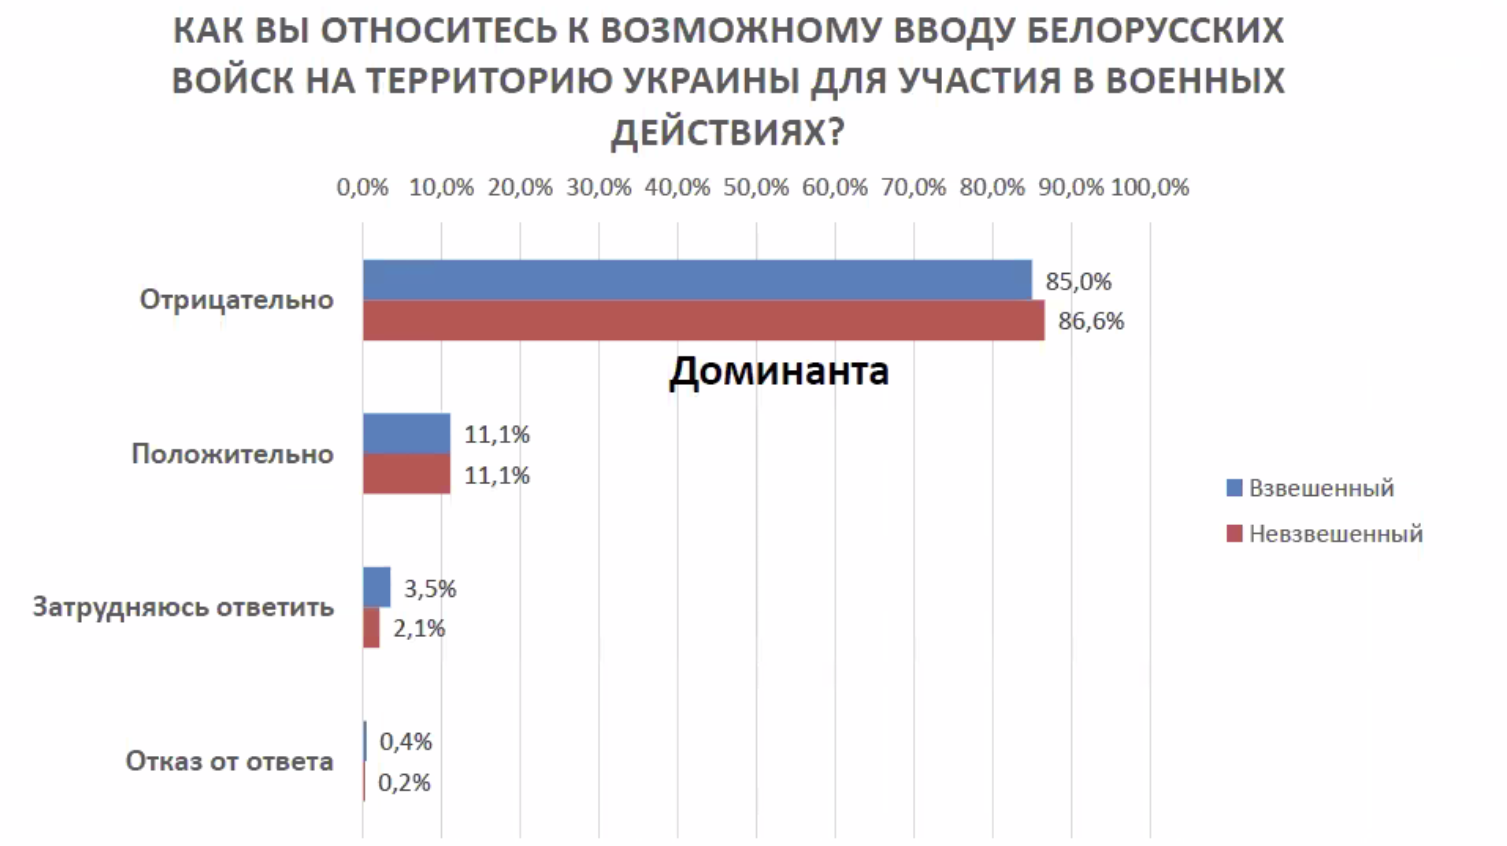 Лишь 11% беларусов одобряют участие беларусских войск в войне с Украиной